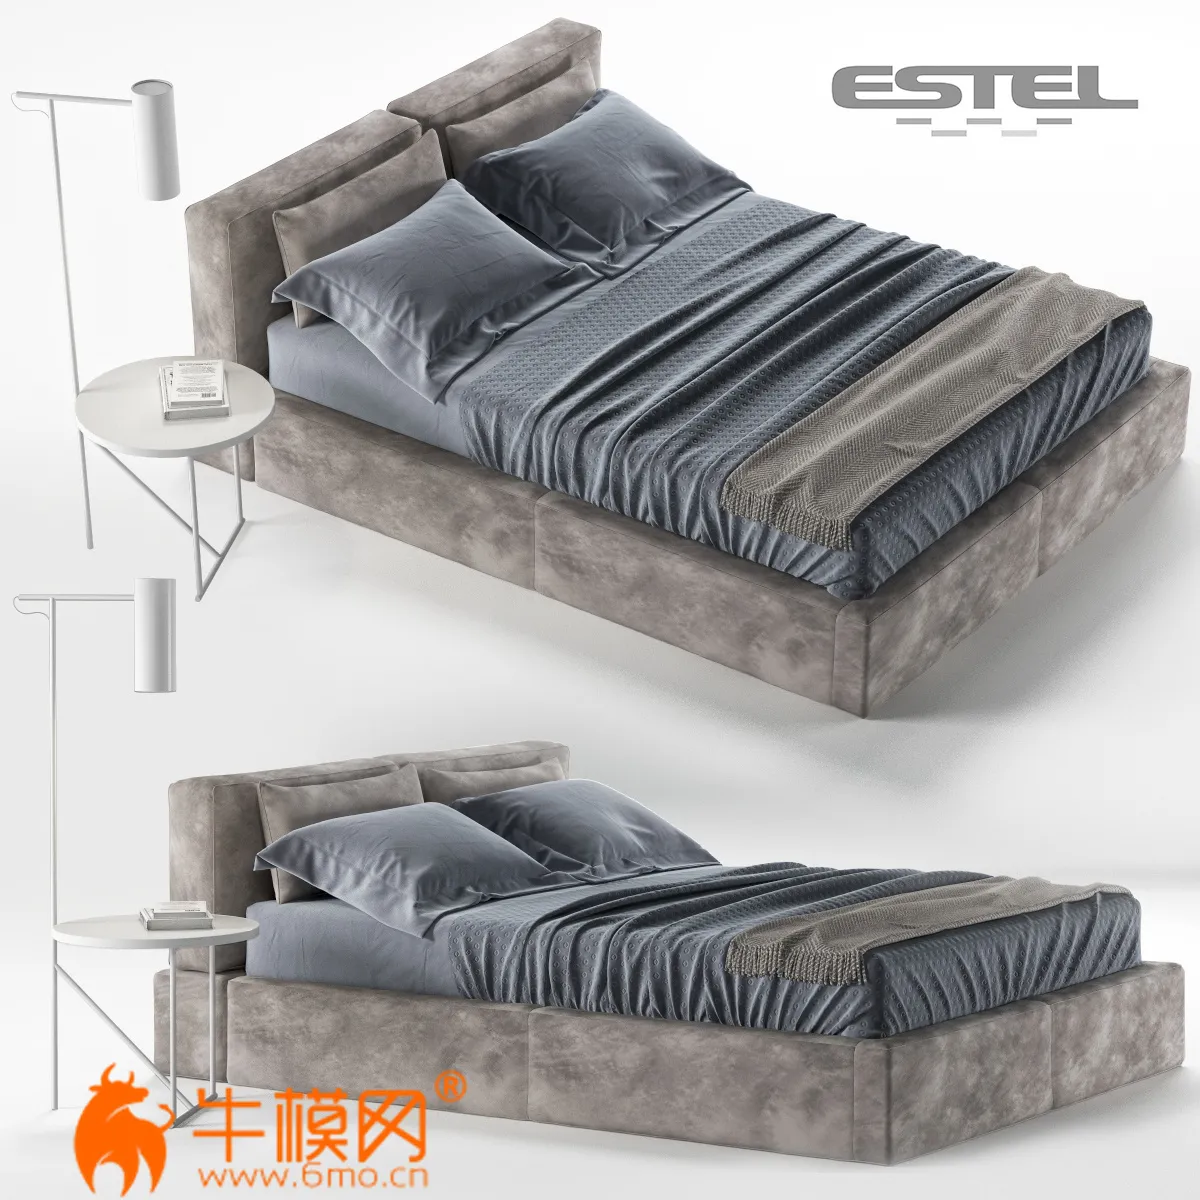 ESTEL CARESSE bed (max. obj) – 3719